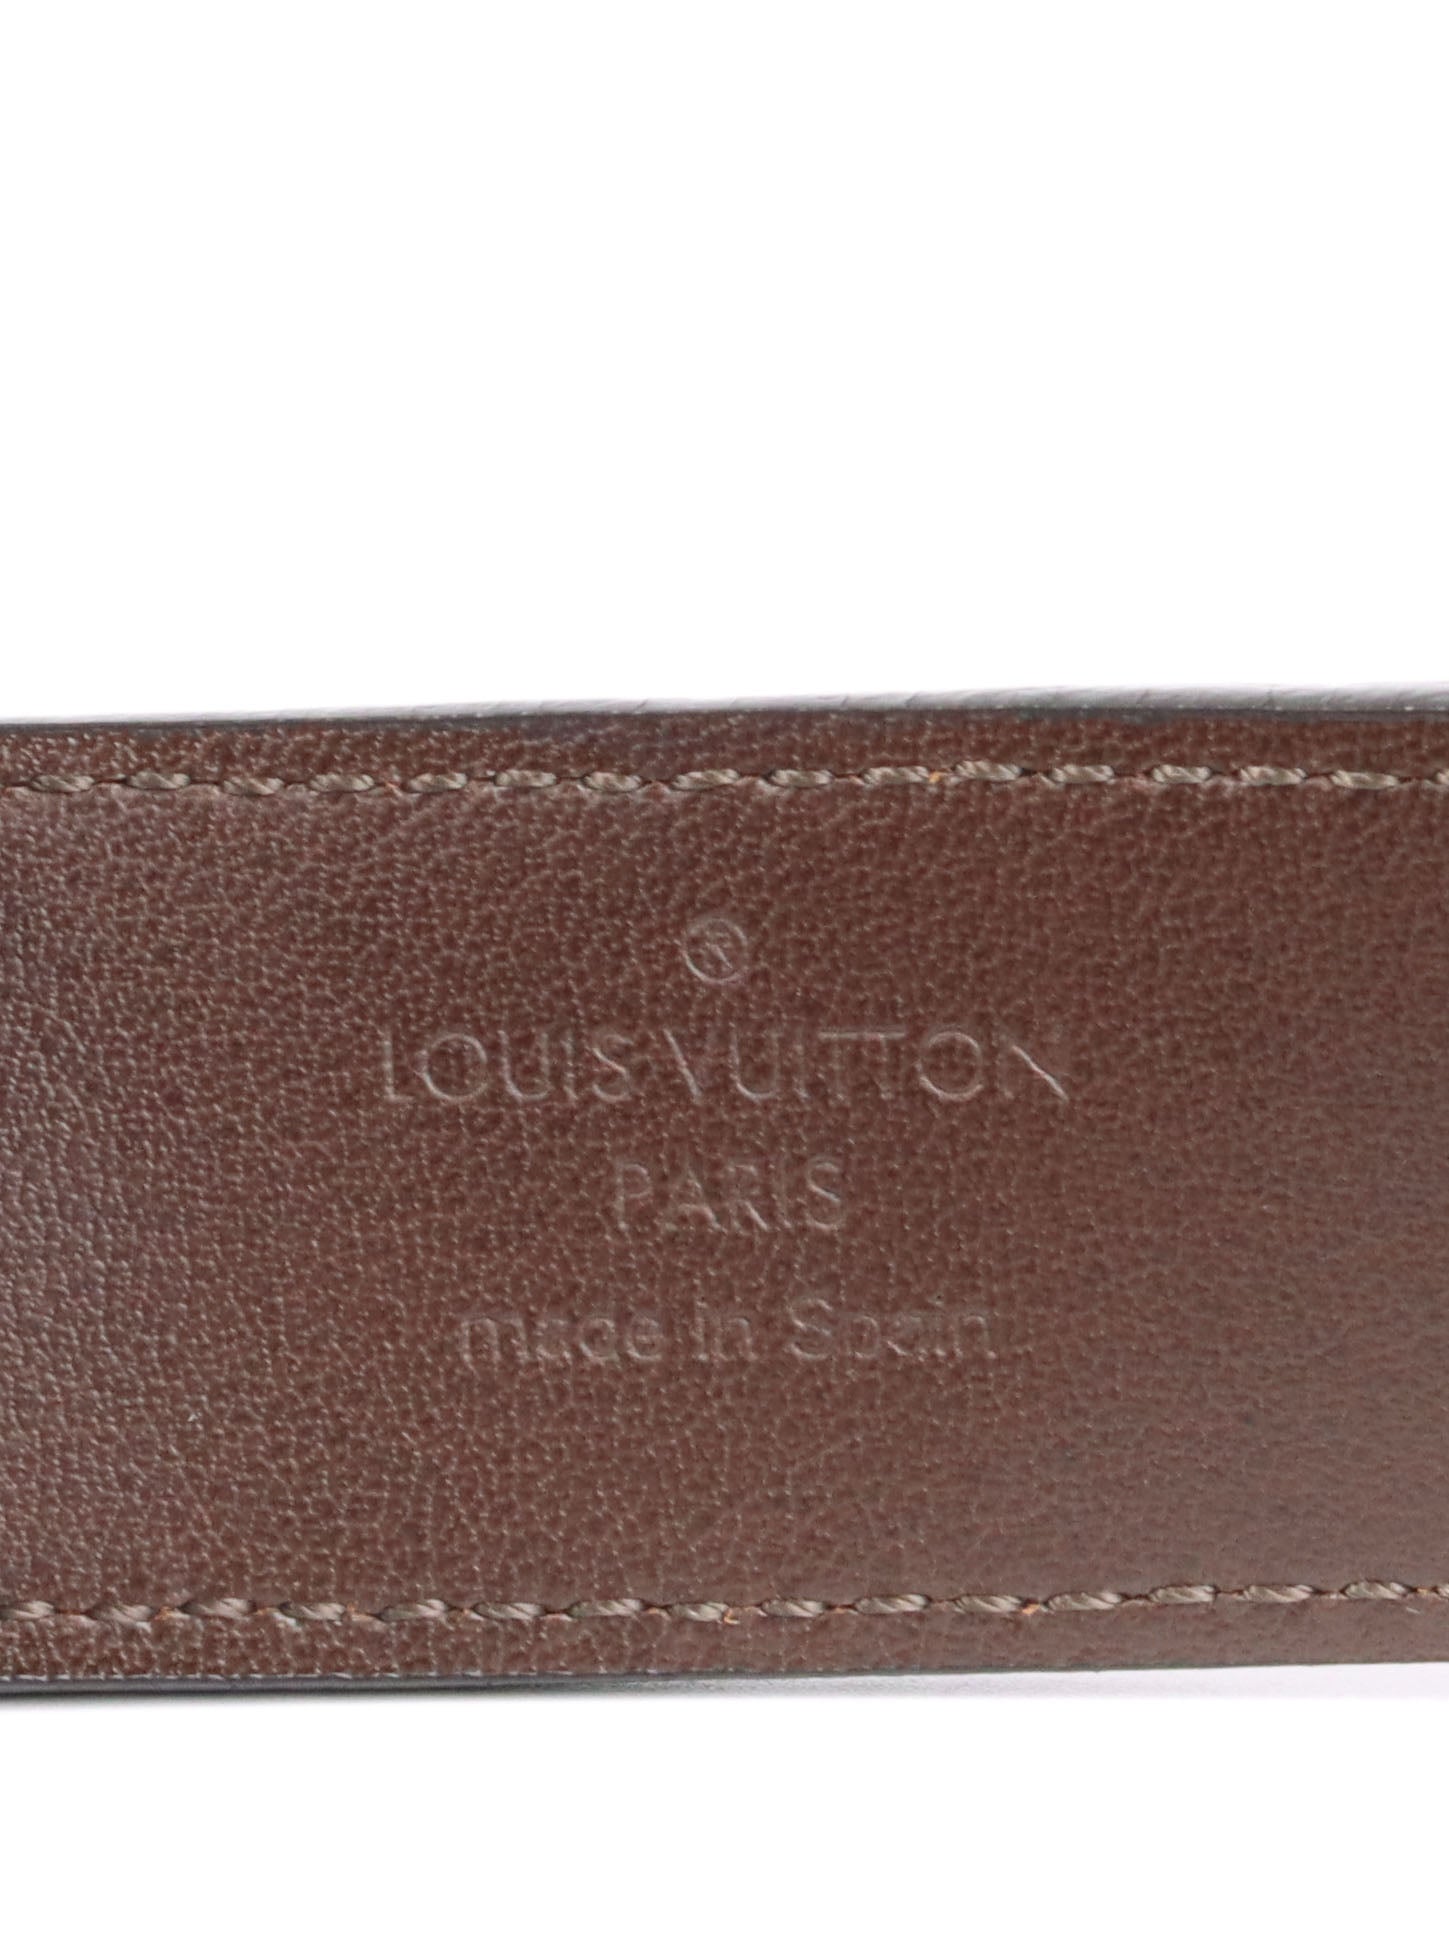 Louis Vuitton Brown Monogram Empreinte Belt 85